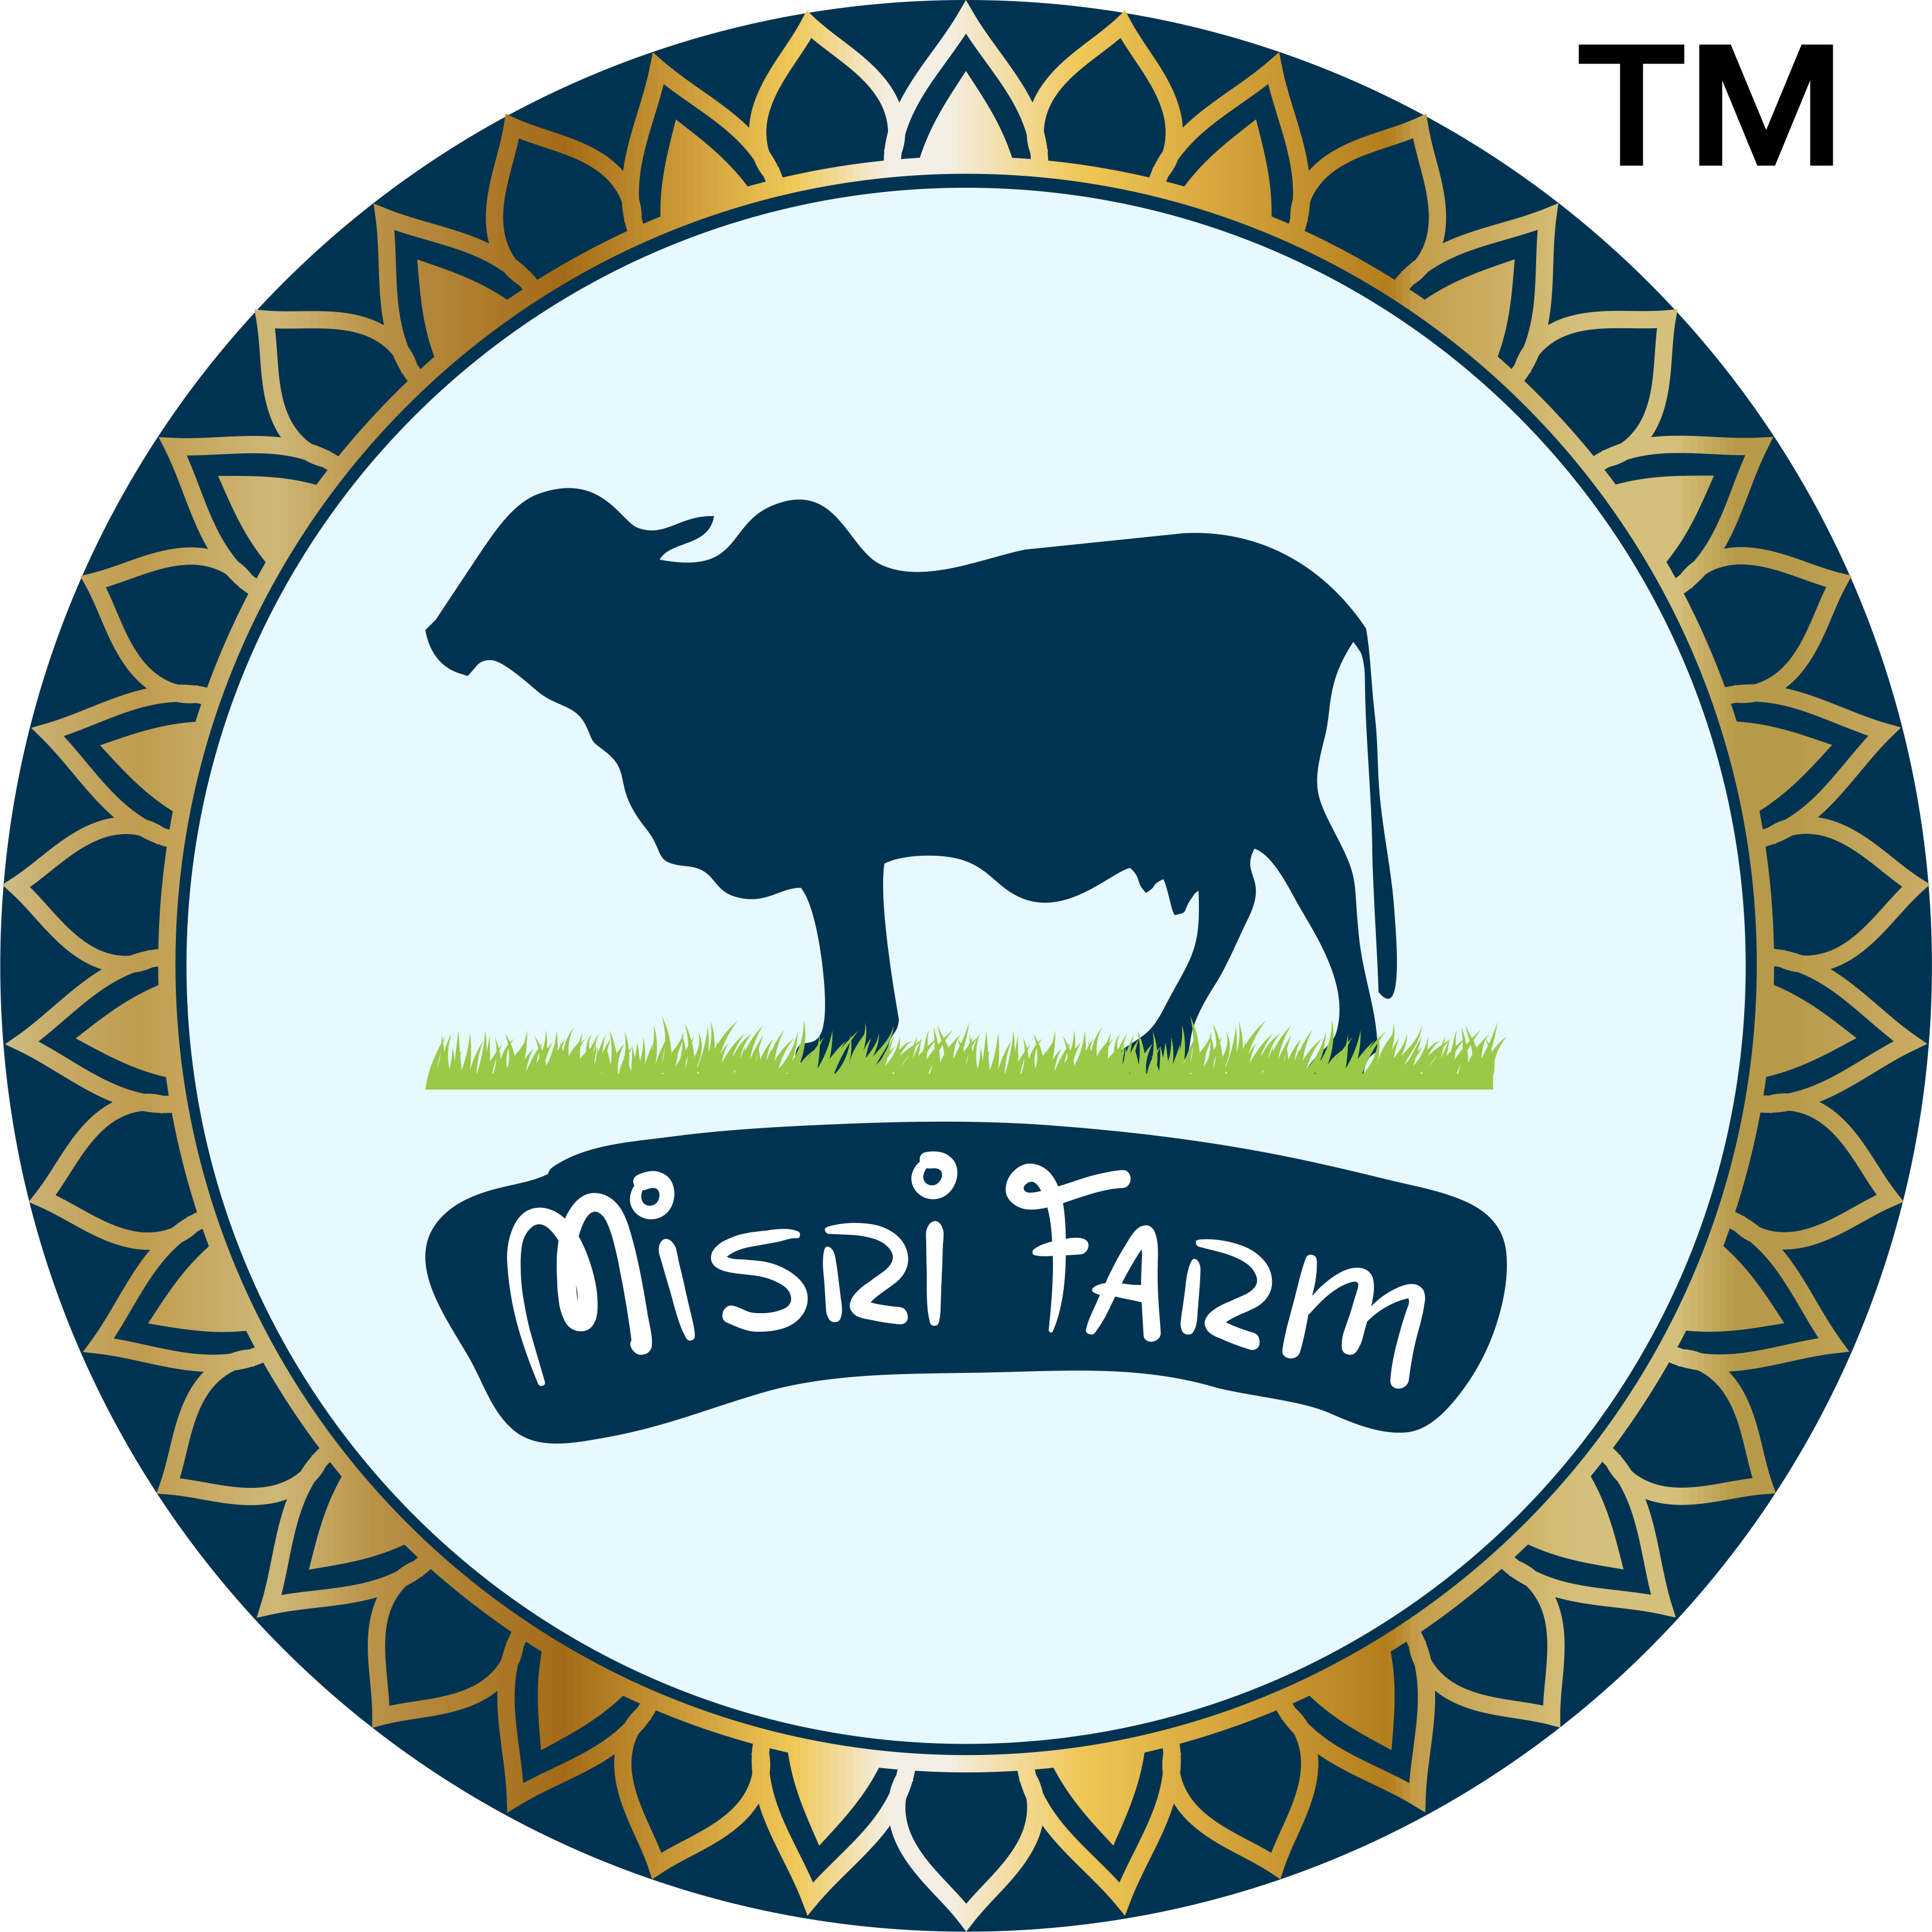 Misri Farm